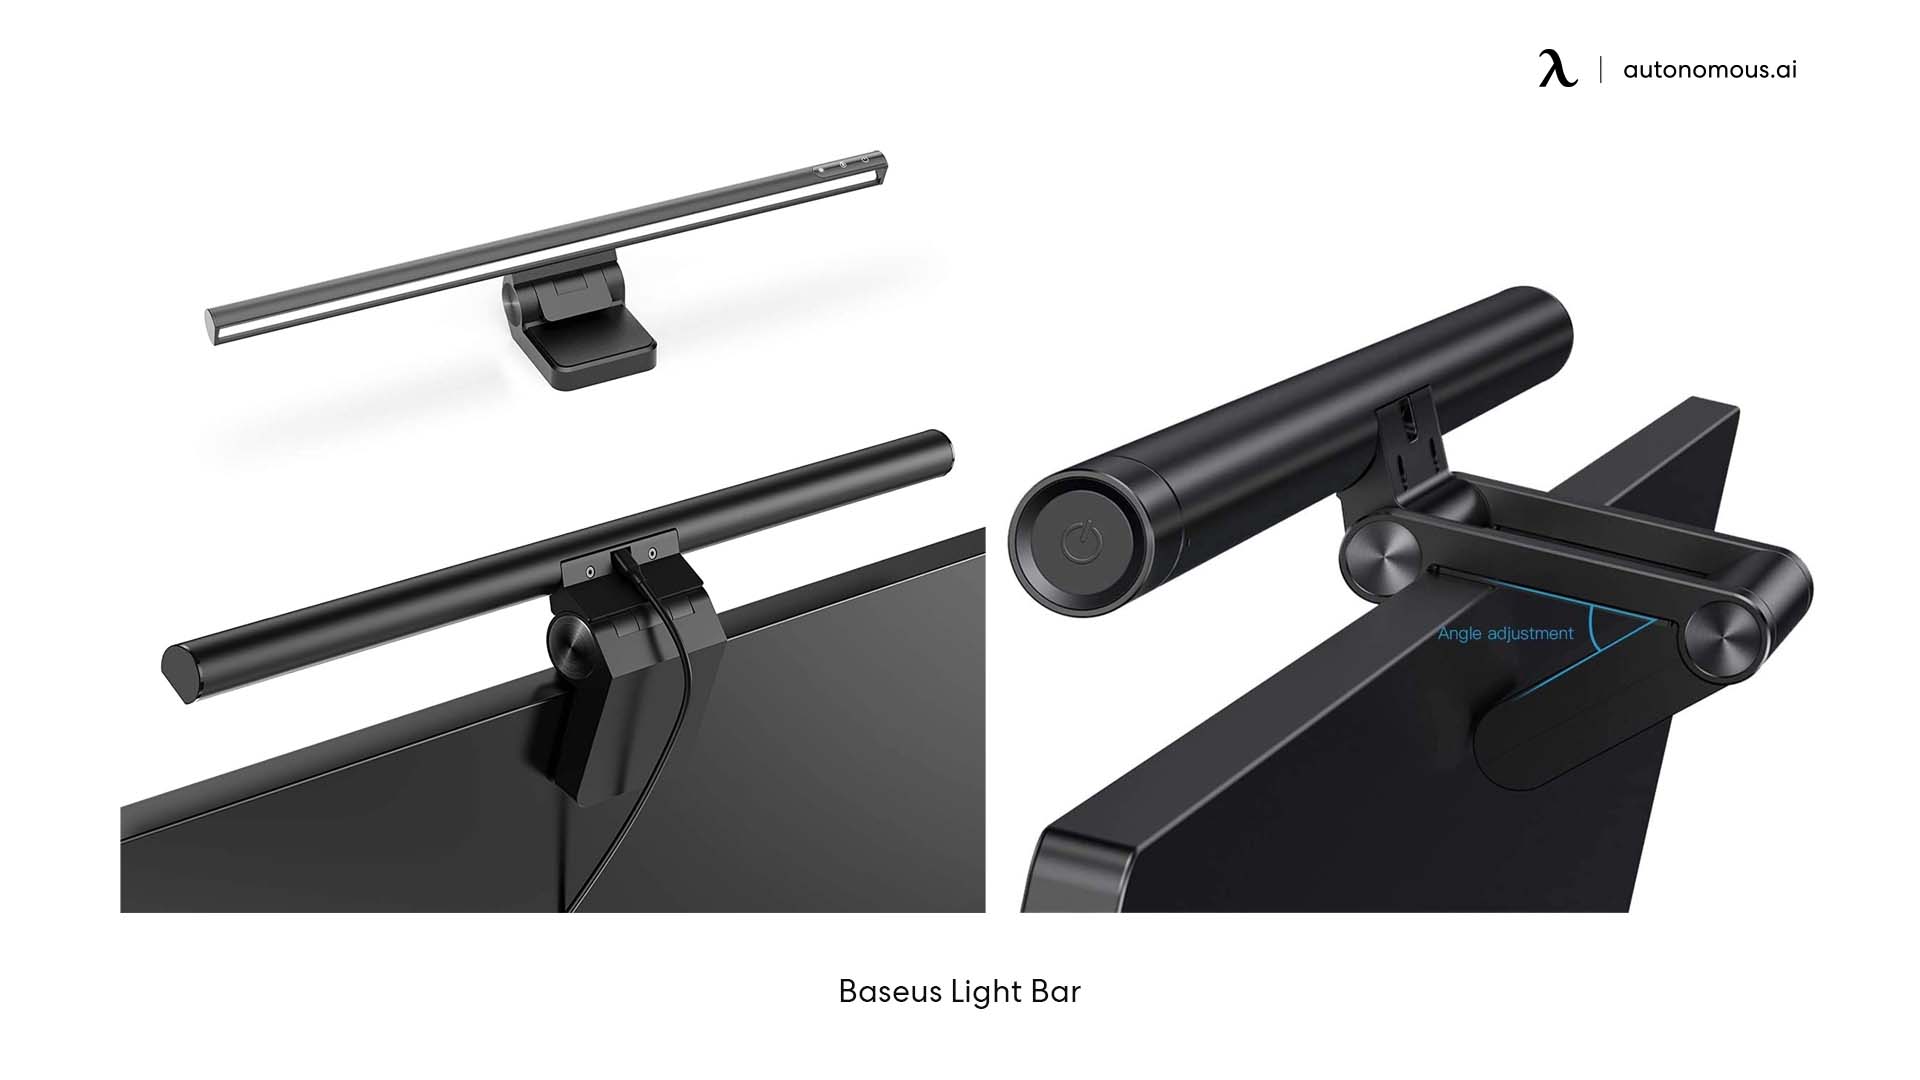 Baseus light bar for desk